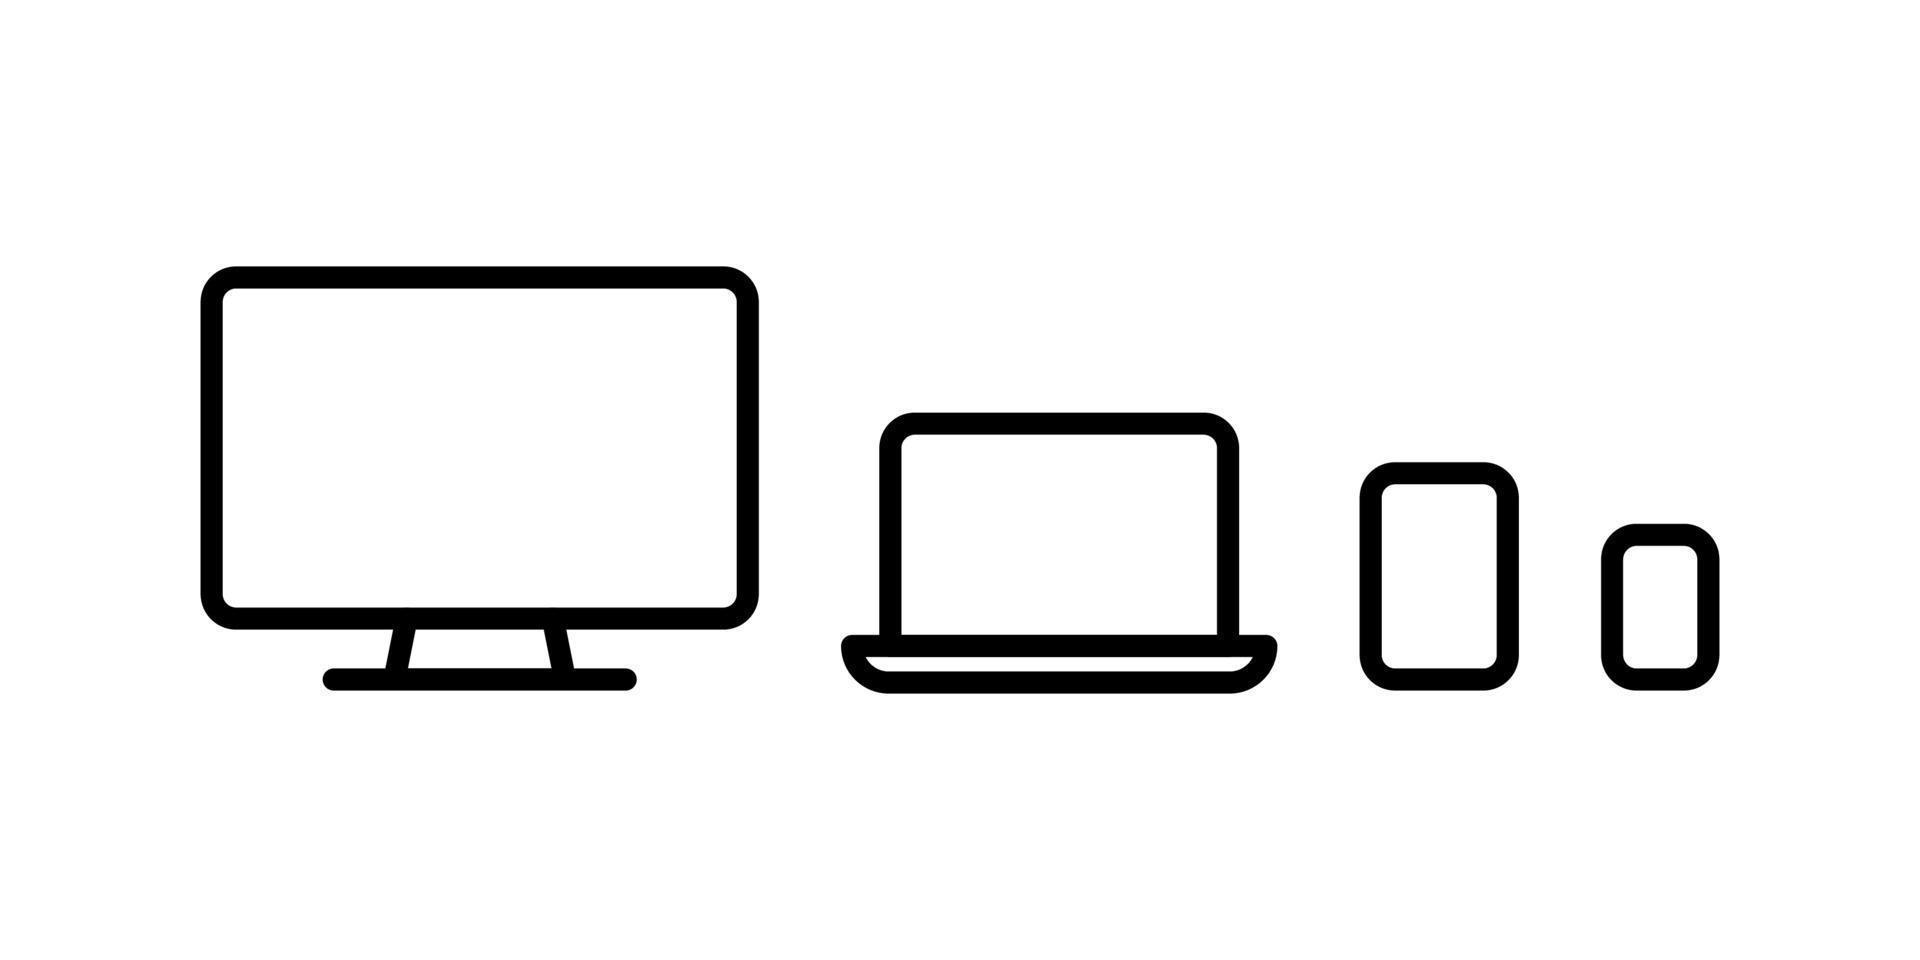 smartphone, tablette, ordinateur portable et ordinateur avec écran de veille vierge isolé sur fond blanc. illustration de contour de vecteur de stock